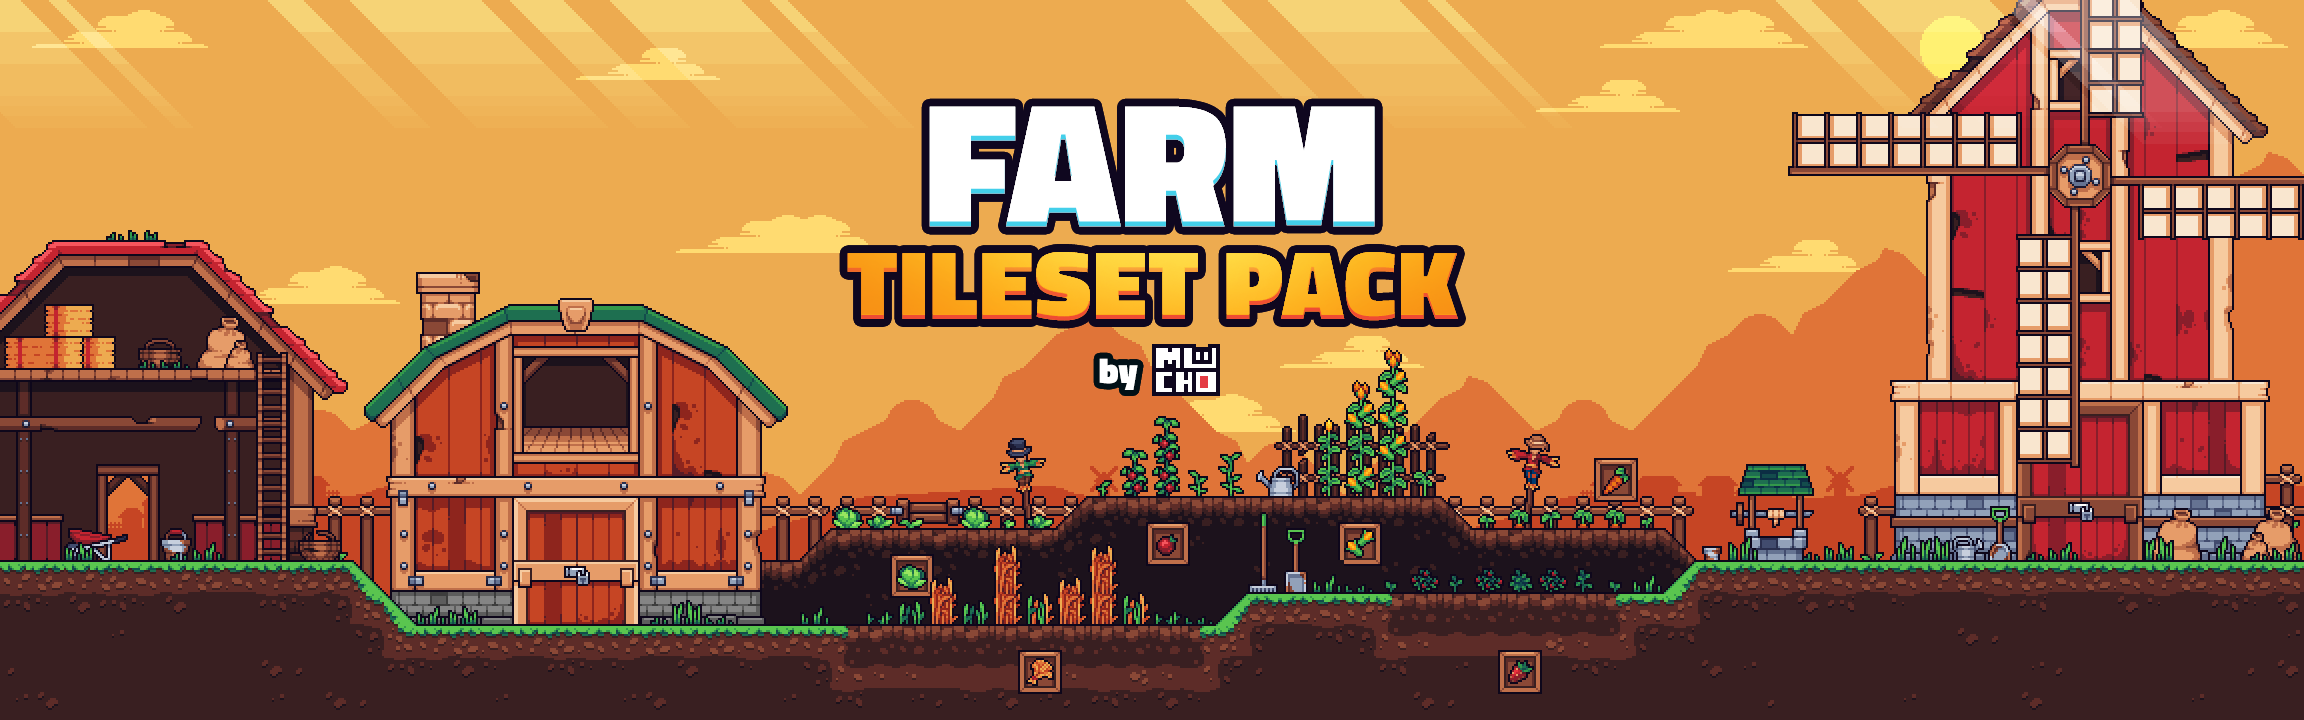 Farm Tileset Pack